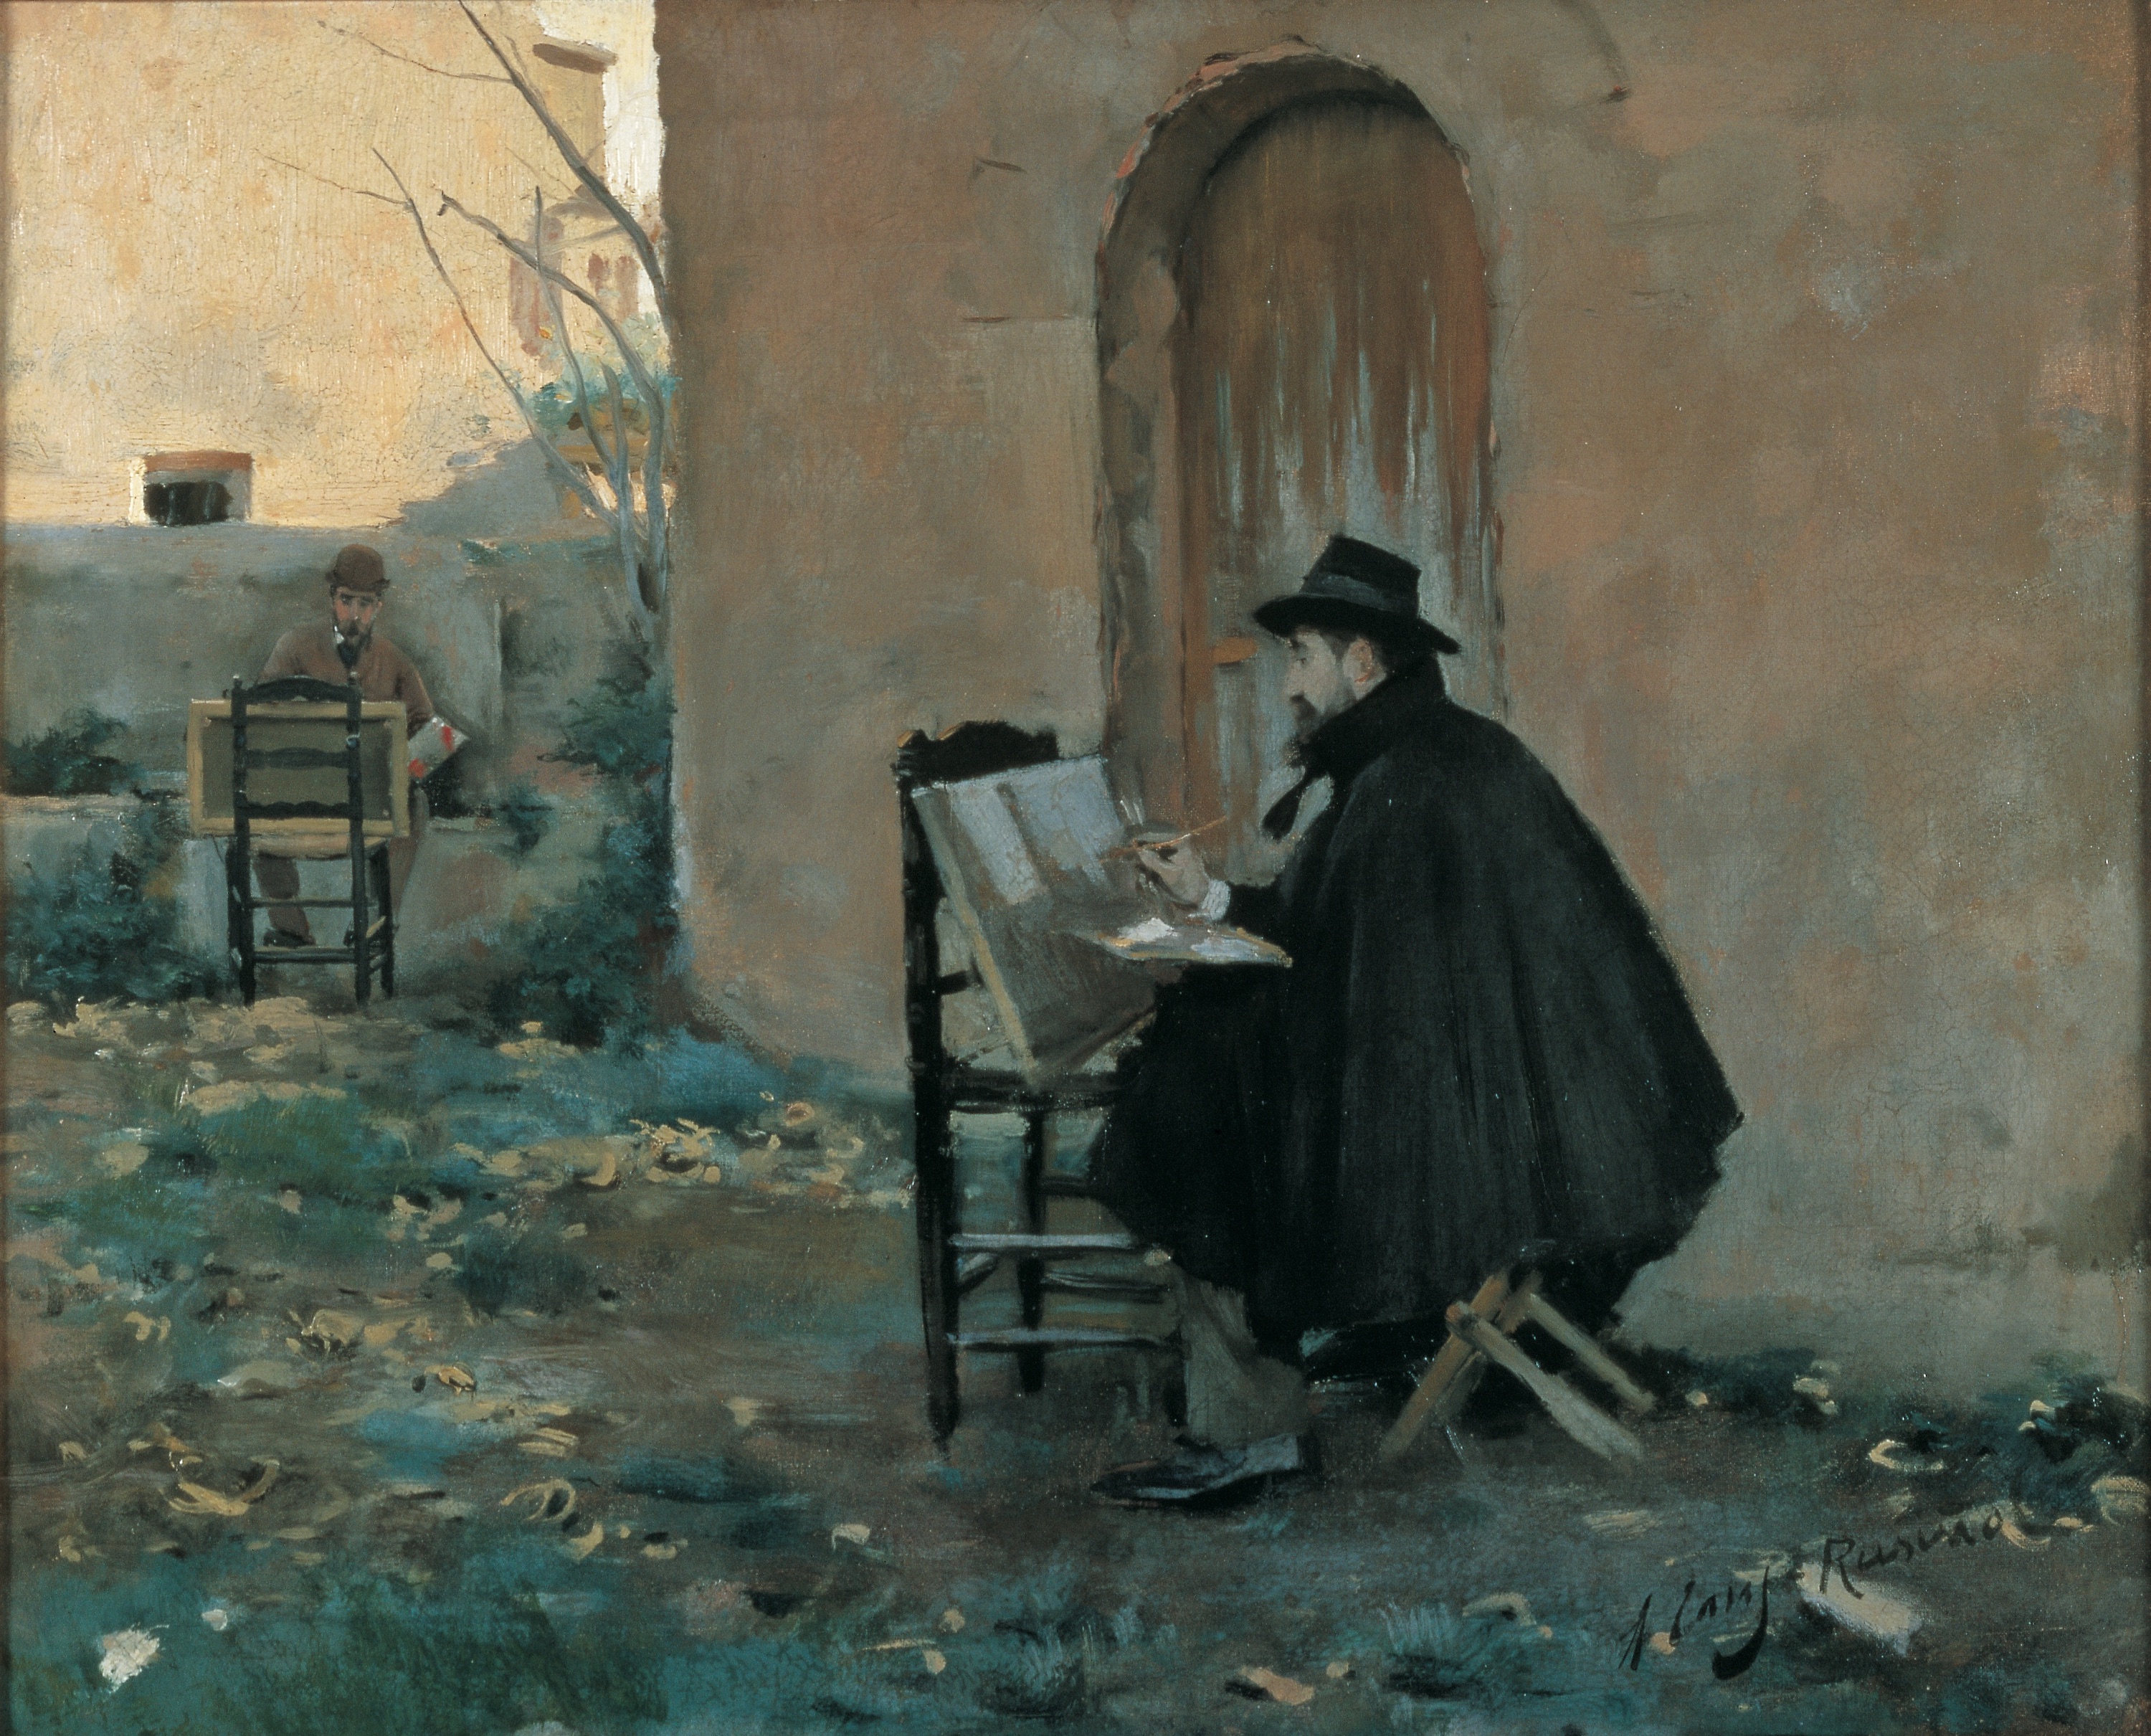 Pintando-se Um ao Outro by Santiago Rusinol and Ramon Casas - 1890 - 60 x 73 cm 